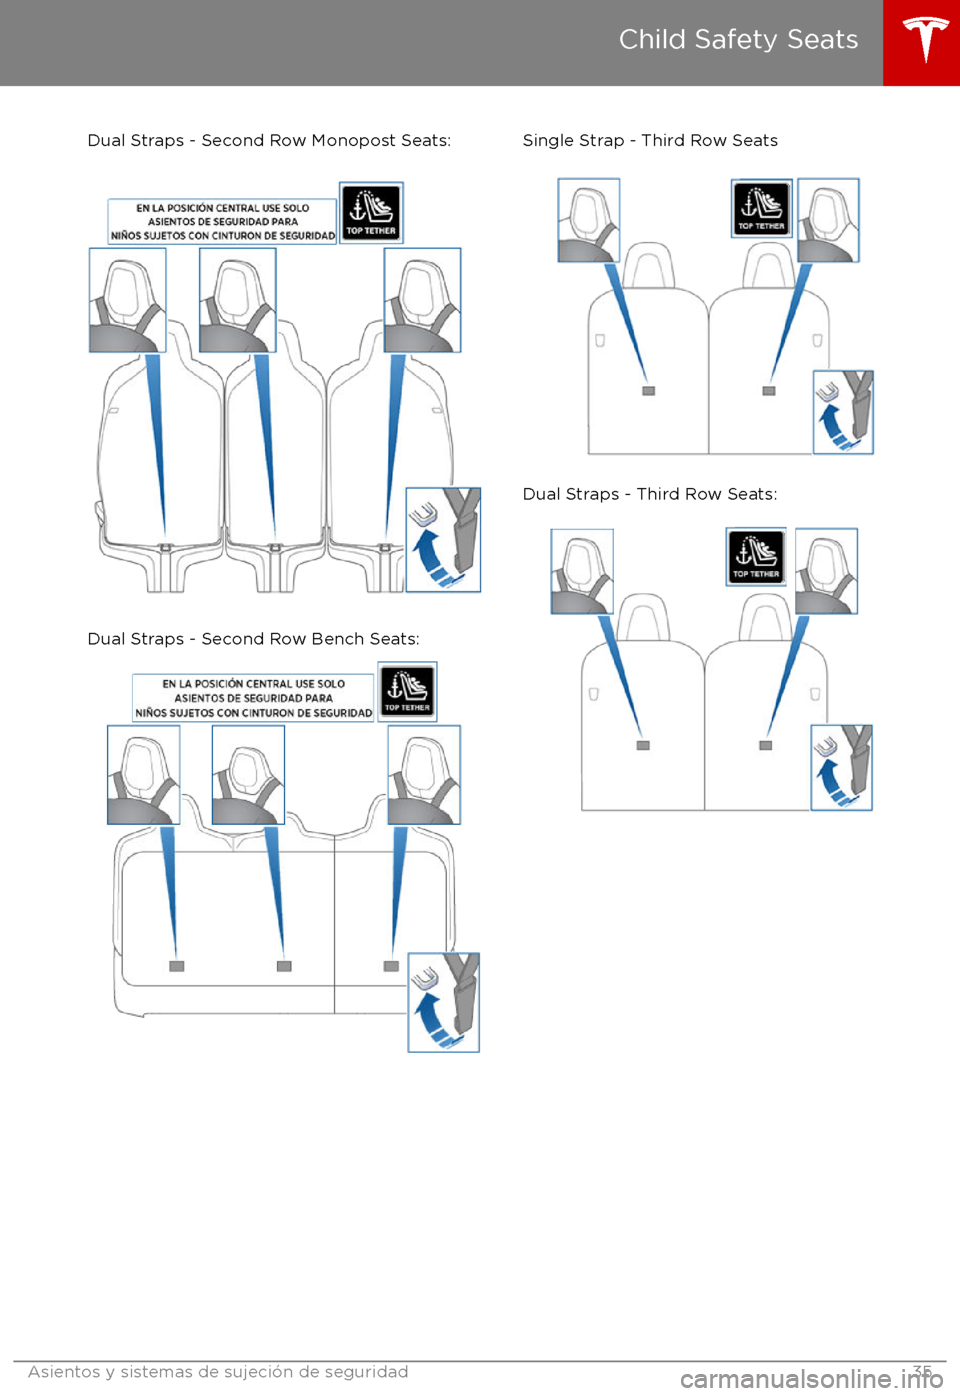 TESLA MODEL X 2017  Manual del propietario (in Spanish) Dual Straps - Second Row Monopost Seats:
Dual Straps - Second Row Bench Seats:
Single Strap - Third Row Seats
Dual Straps - Third Row Seats:
Child Safety Seats
Asientos y sistemas de sujeci